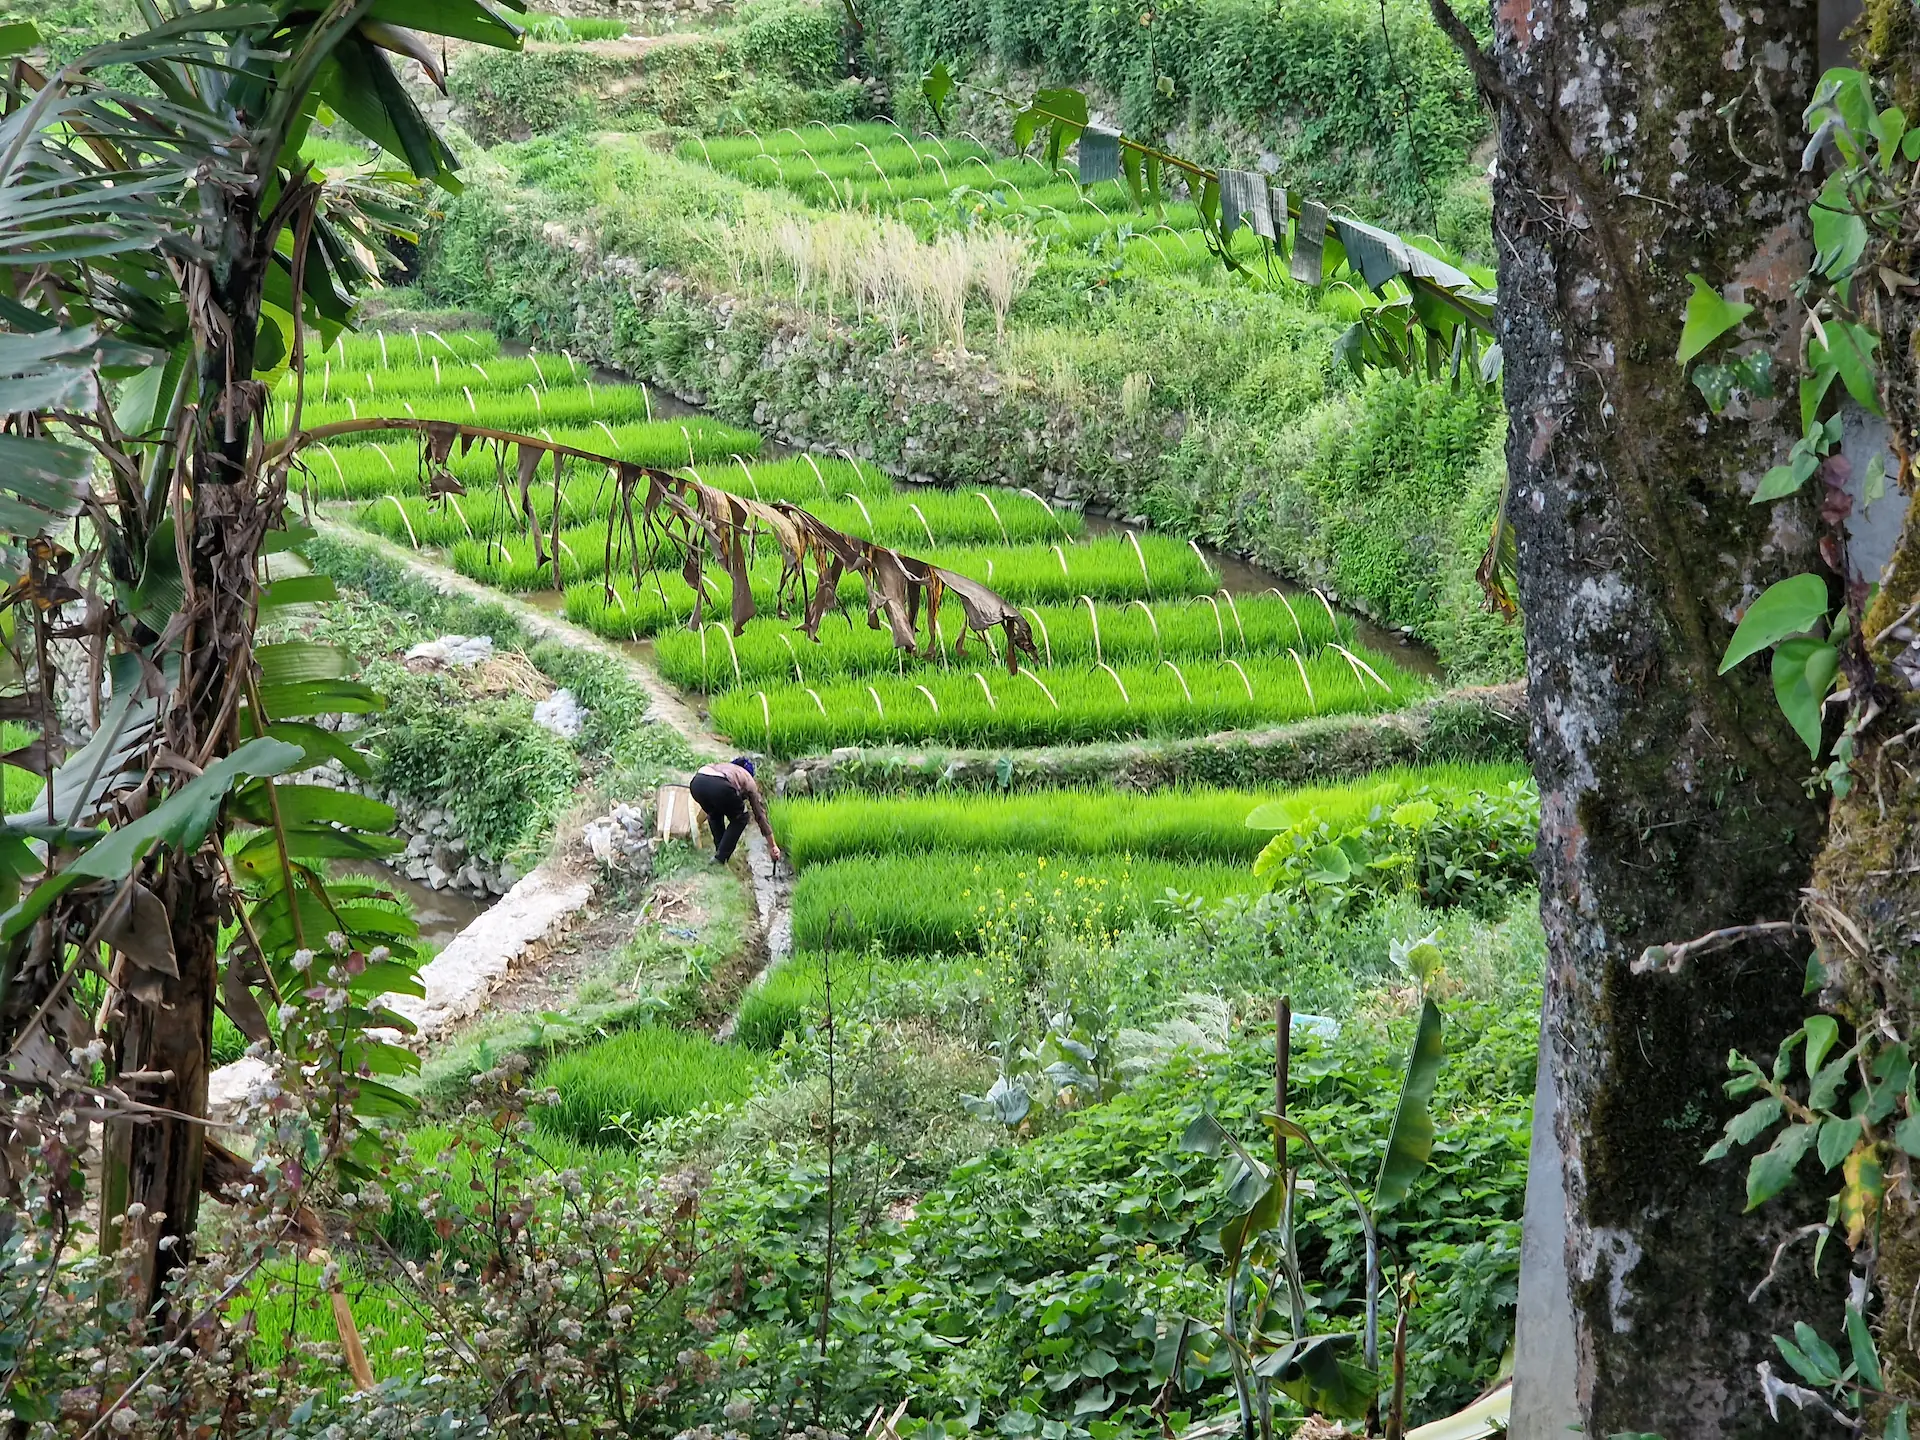 Entre deux arbres, on aperçoit un agriculteur travaillant dans sa rizière très verte.